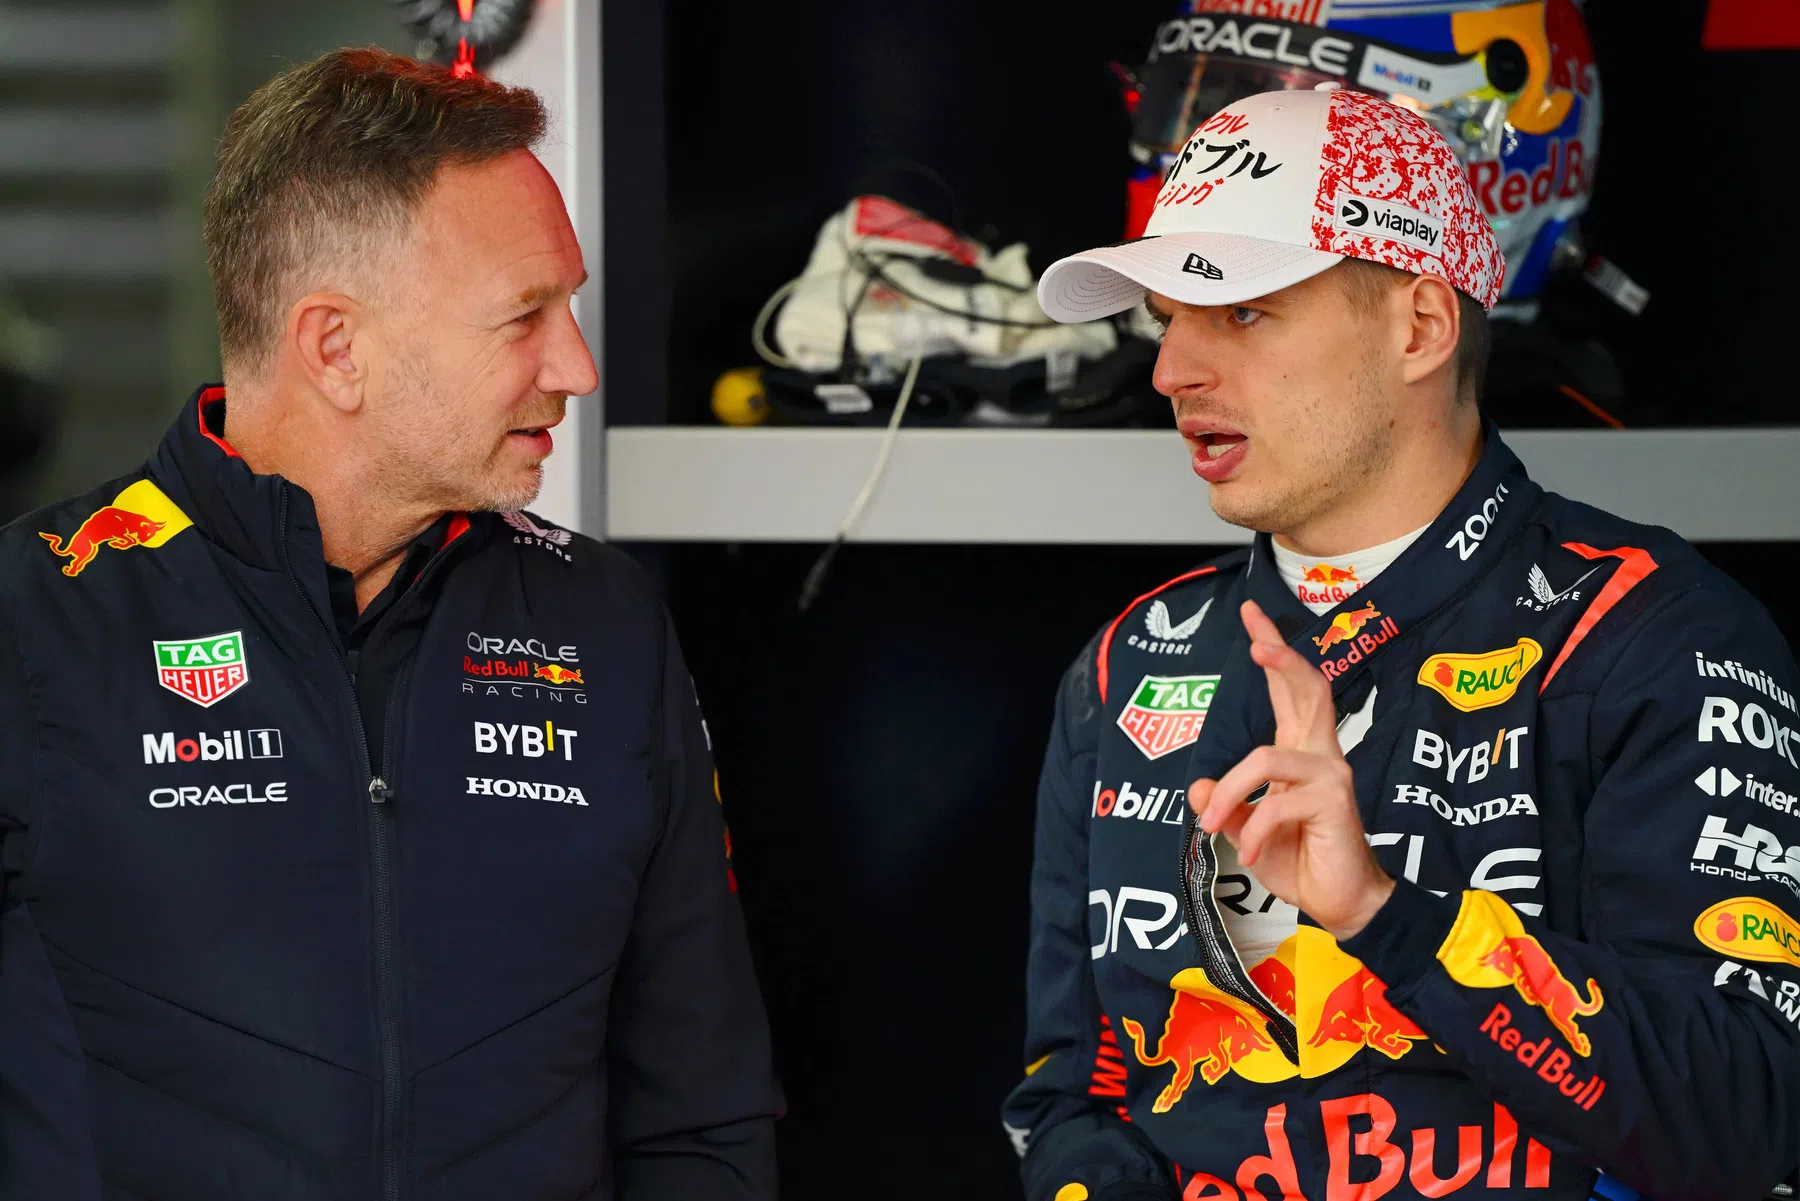 Horner responds to Verstappen's concerns